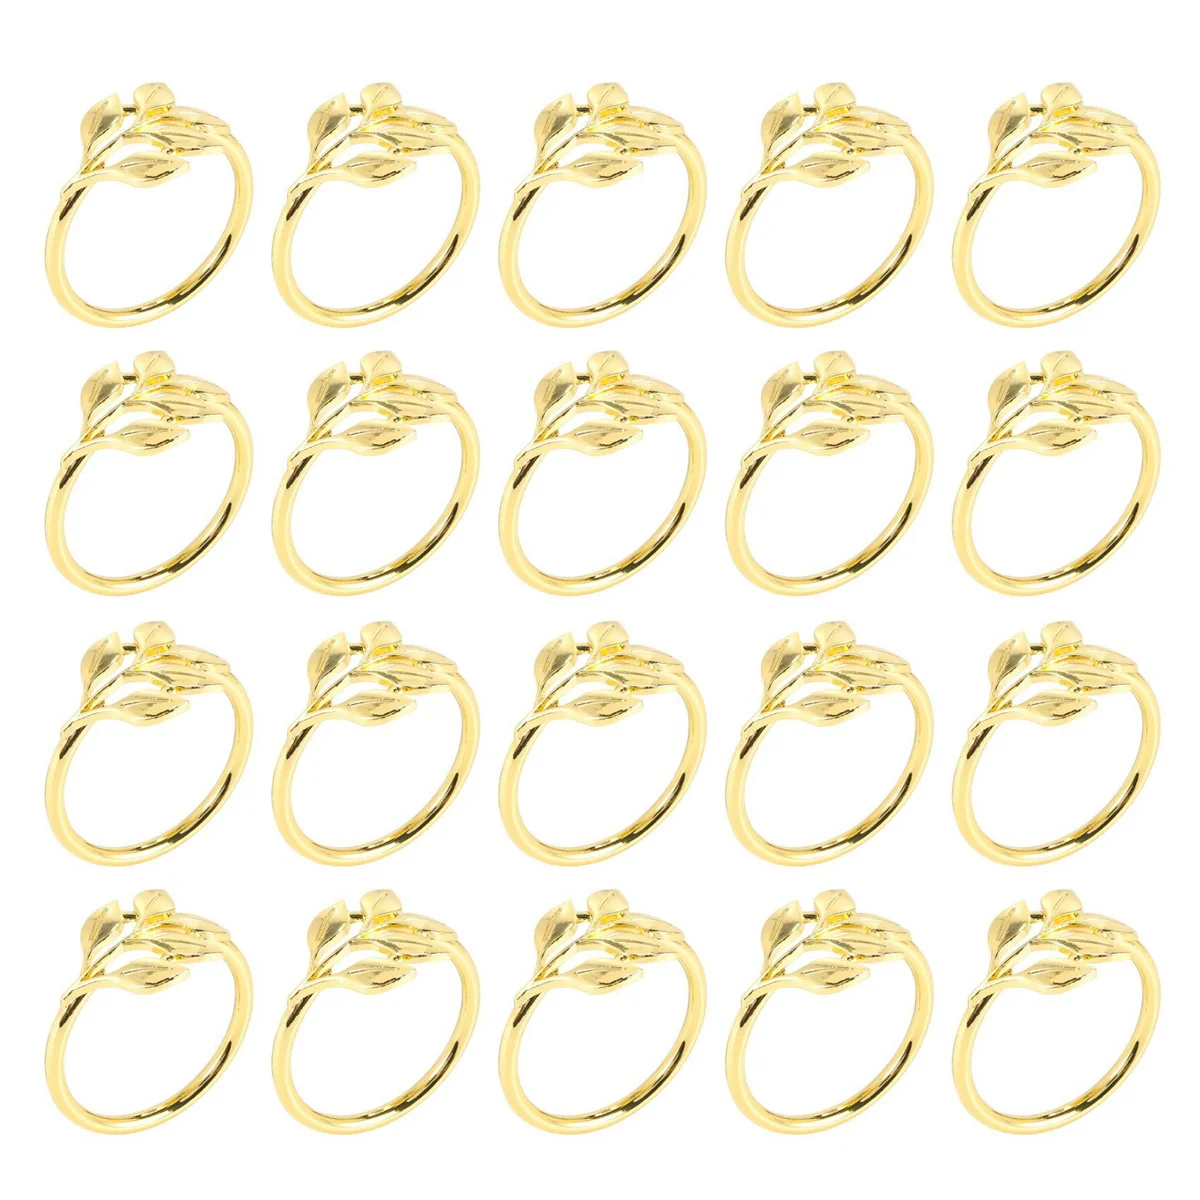 

20 шт. золотые кольца для салфеток-Золотое кольцо для салфеток-праздничные кольца для салфеток, Осенние кольца для салфеток